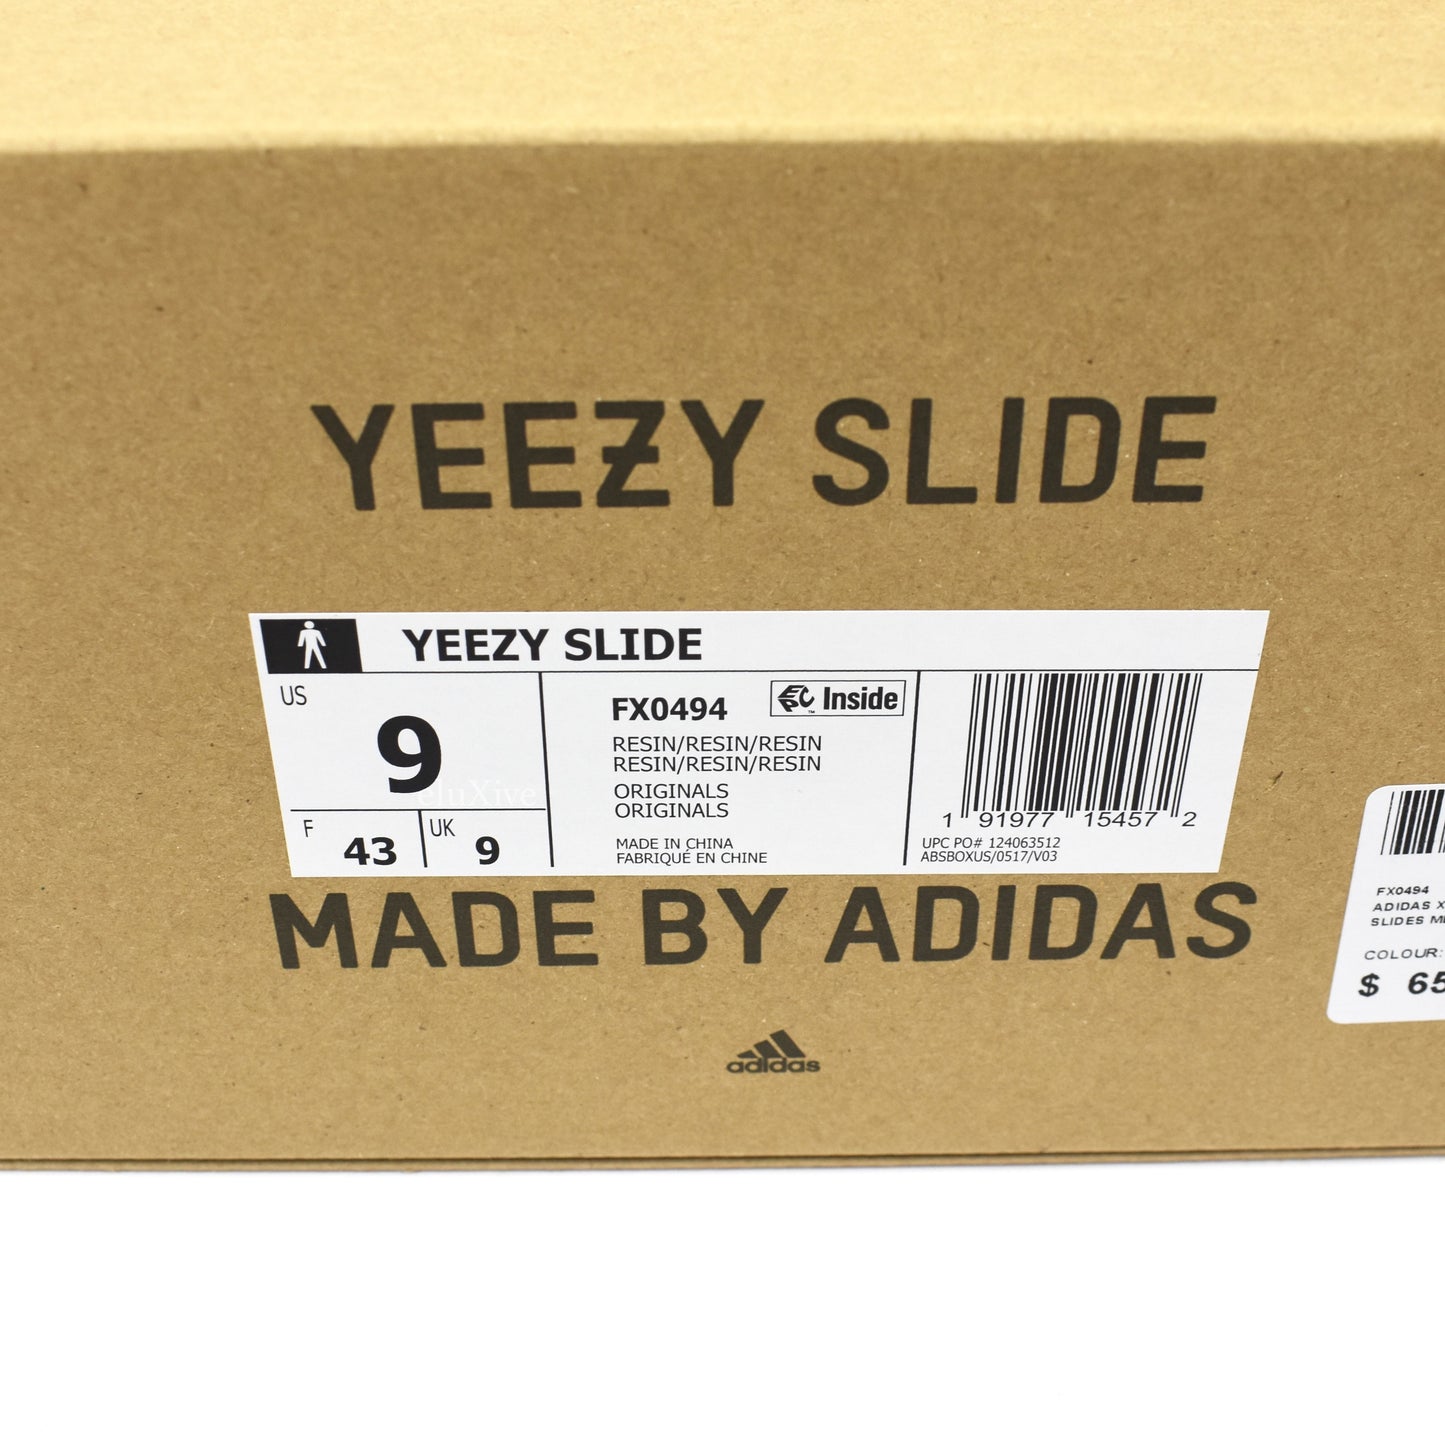 Adidas x Kanye West - Yeezy Slides (Resin)